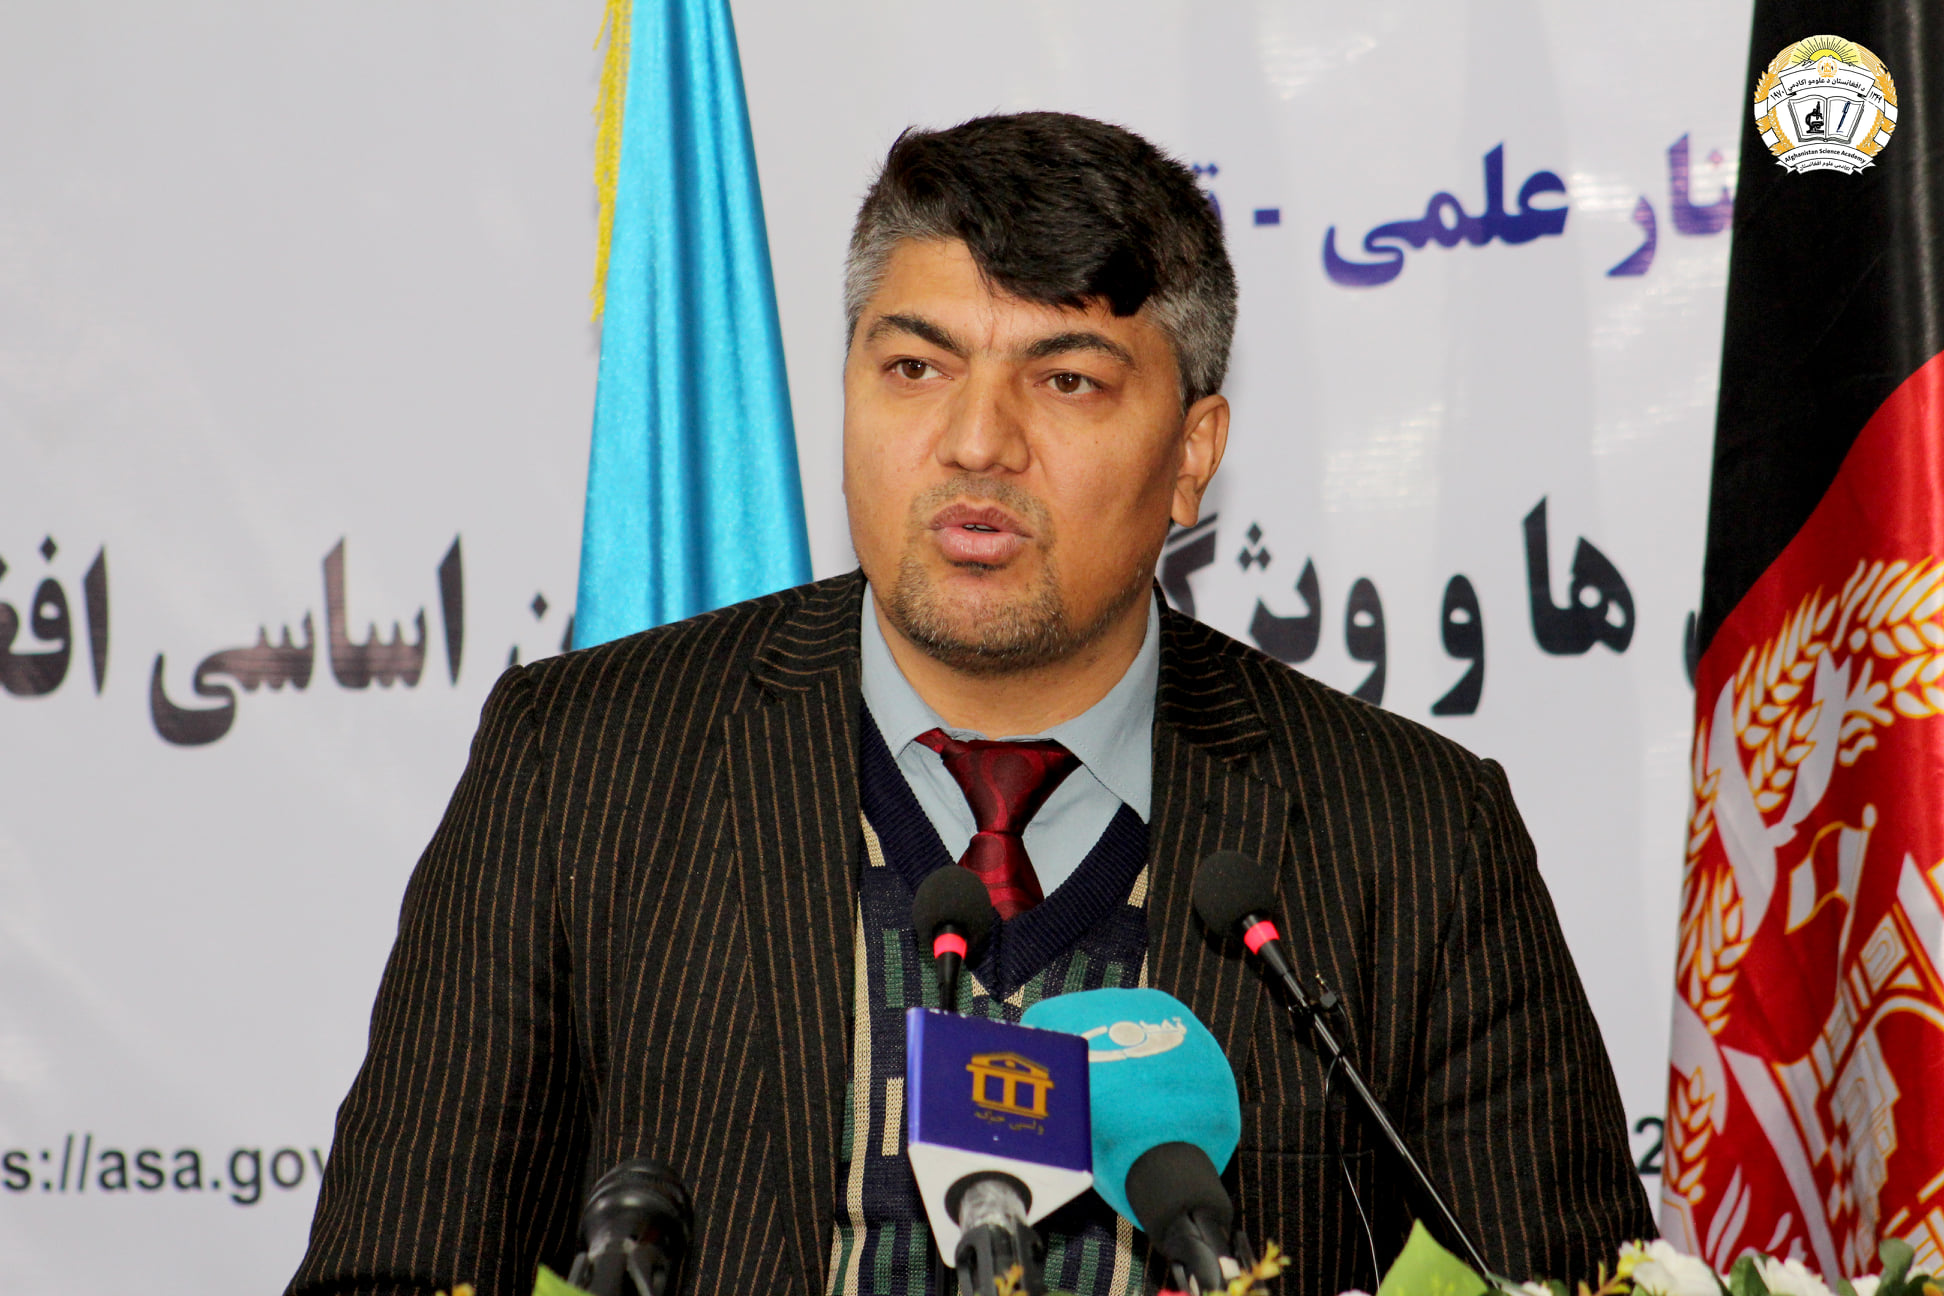 سیمینار علمی – تحقیقی «ارزش ها و ویژگی های قانون اساسی افغانستان» برگزار گردید